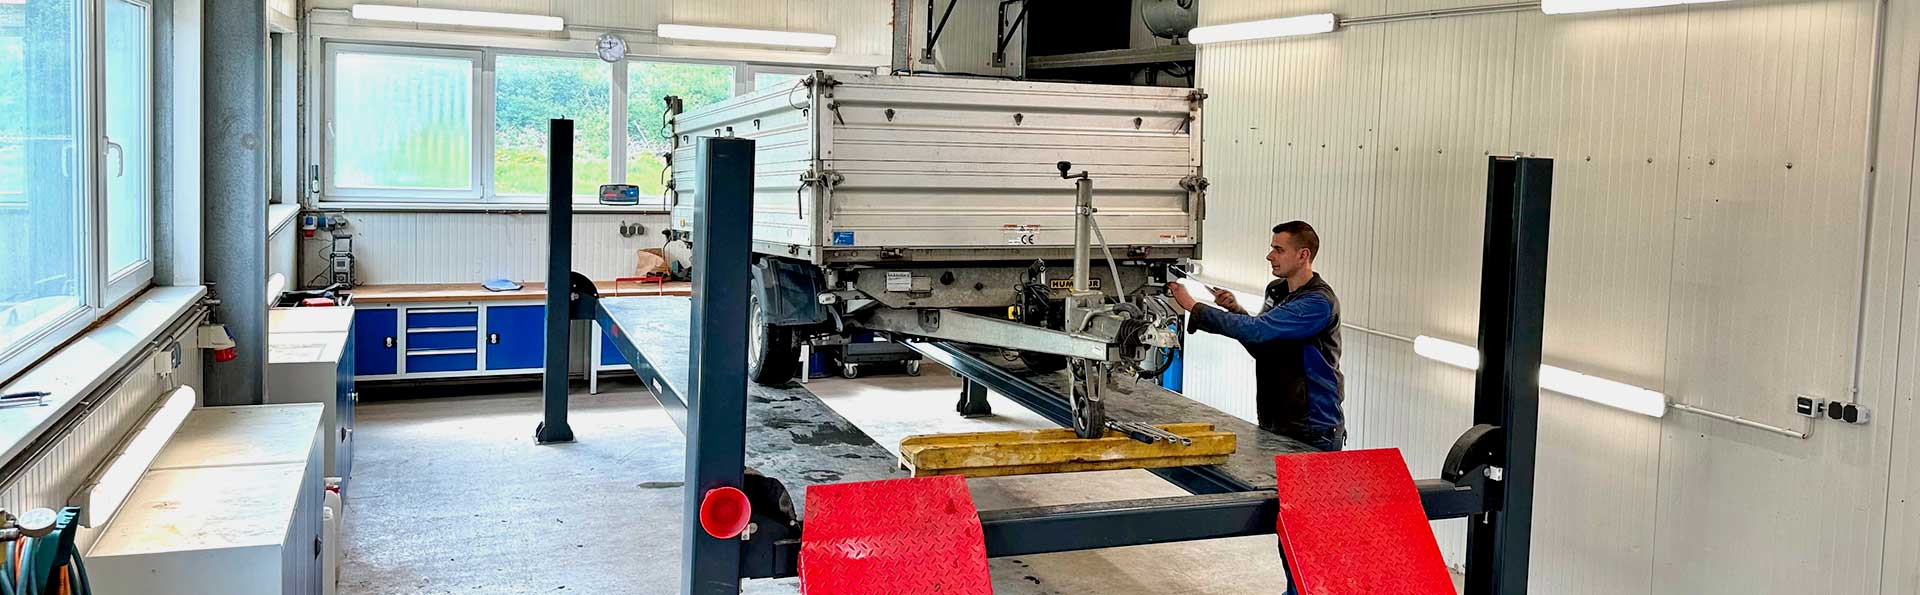 Service - Wartungsarbeiten und Reparaturen für Baumaschinen aller Fabrikate